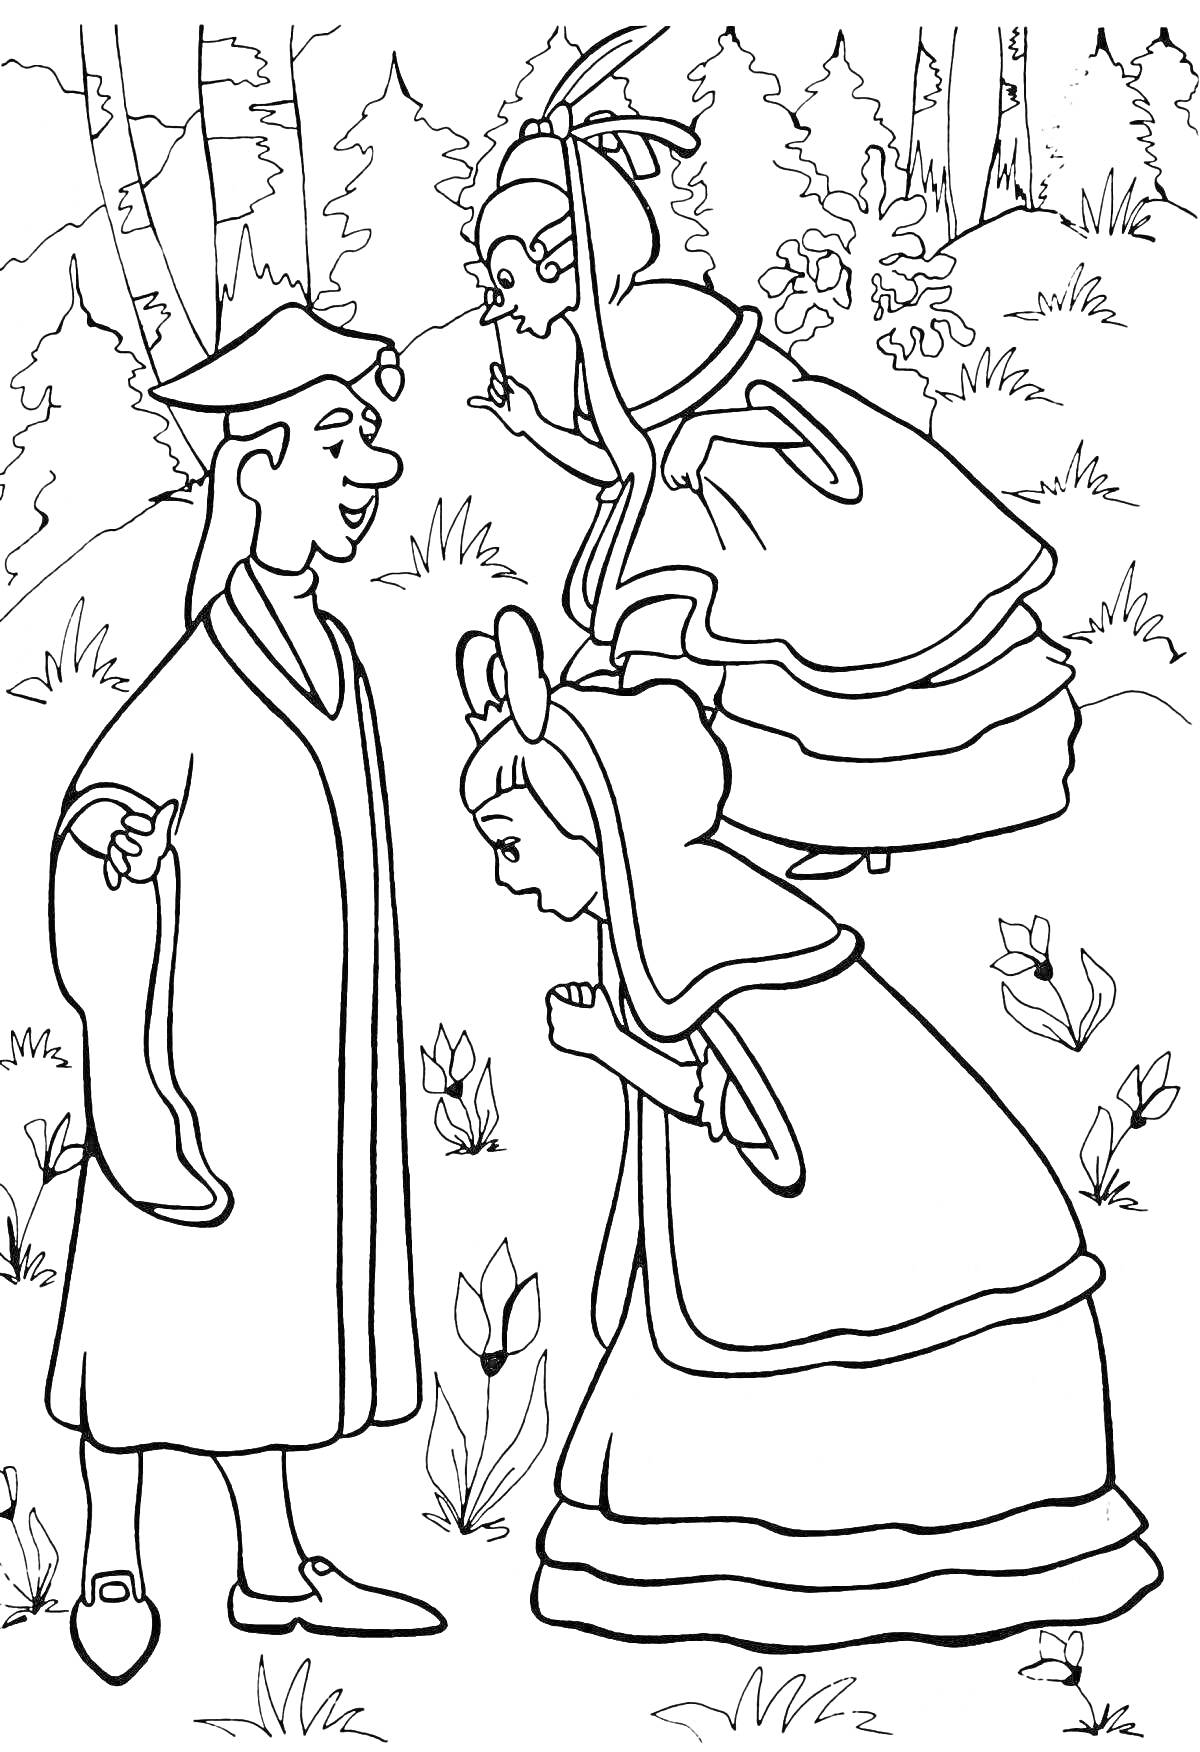 Раскраска Три фигуры в лесу с цветами, мужчина с шапкой и свитком в руке, две женщины в традиционных одеждах обсуждают что-то